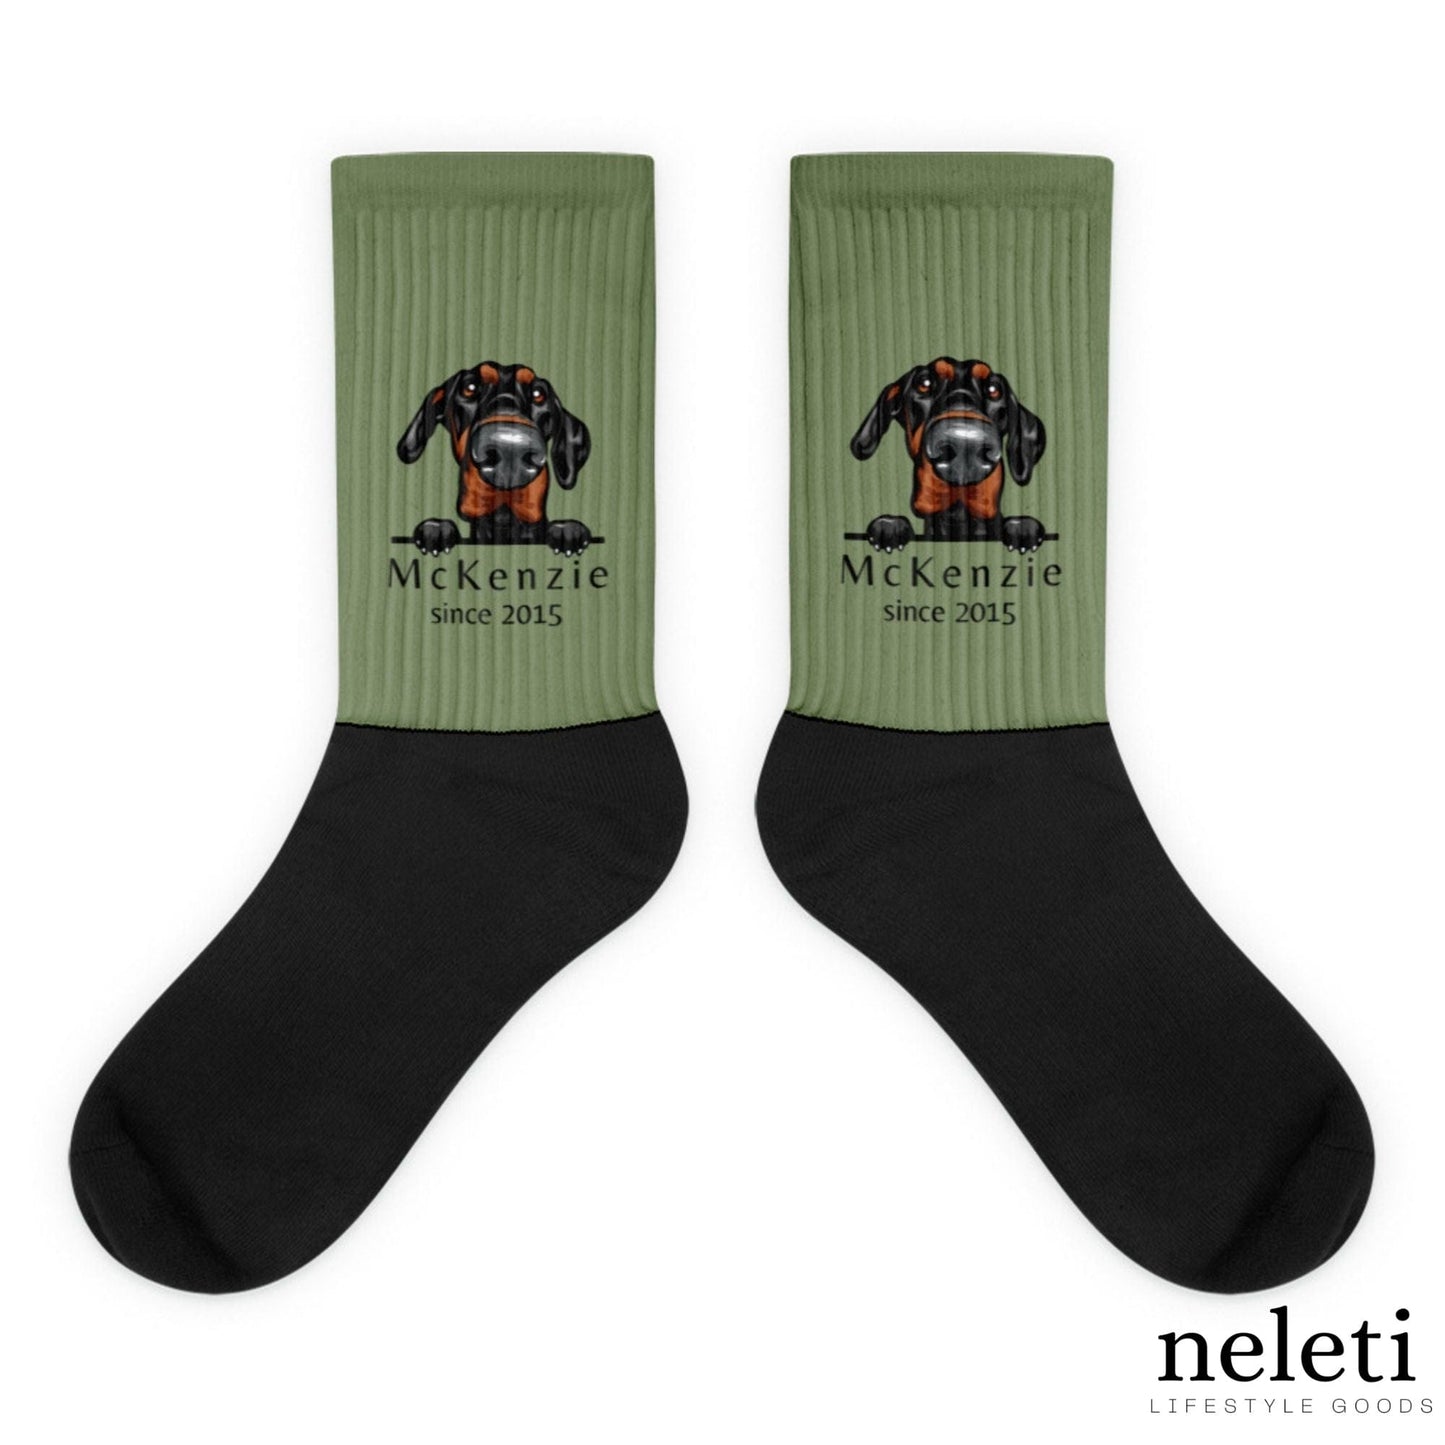 neleti.com-custom-green-socks-for-dog-lovers